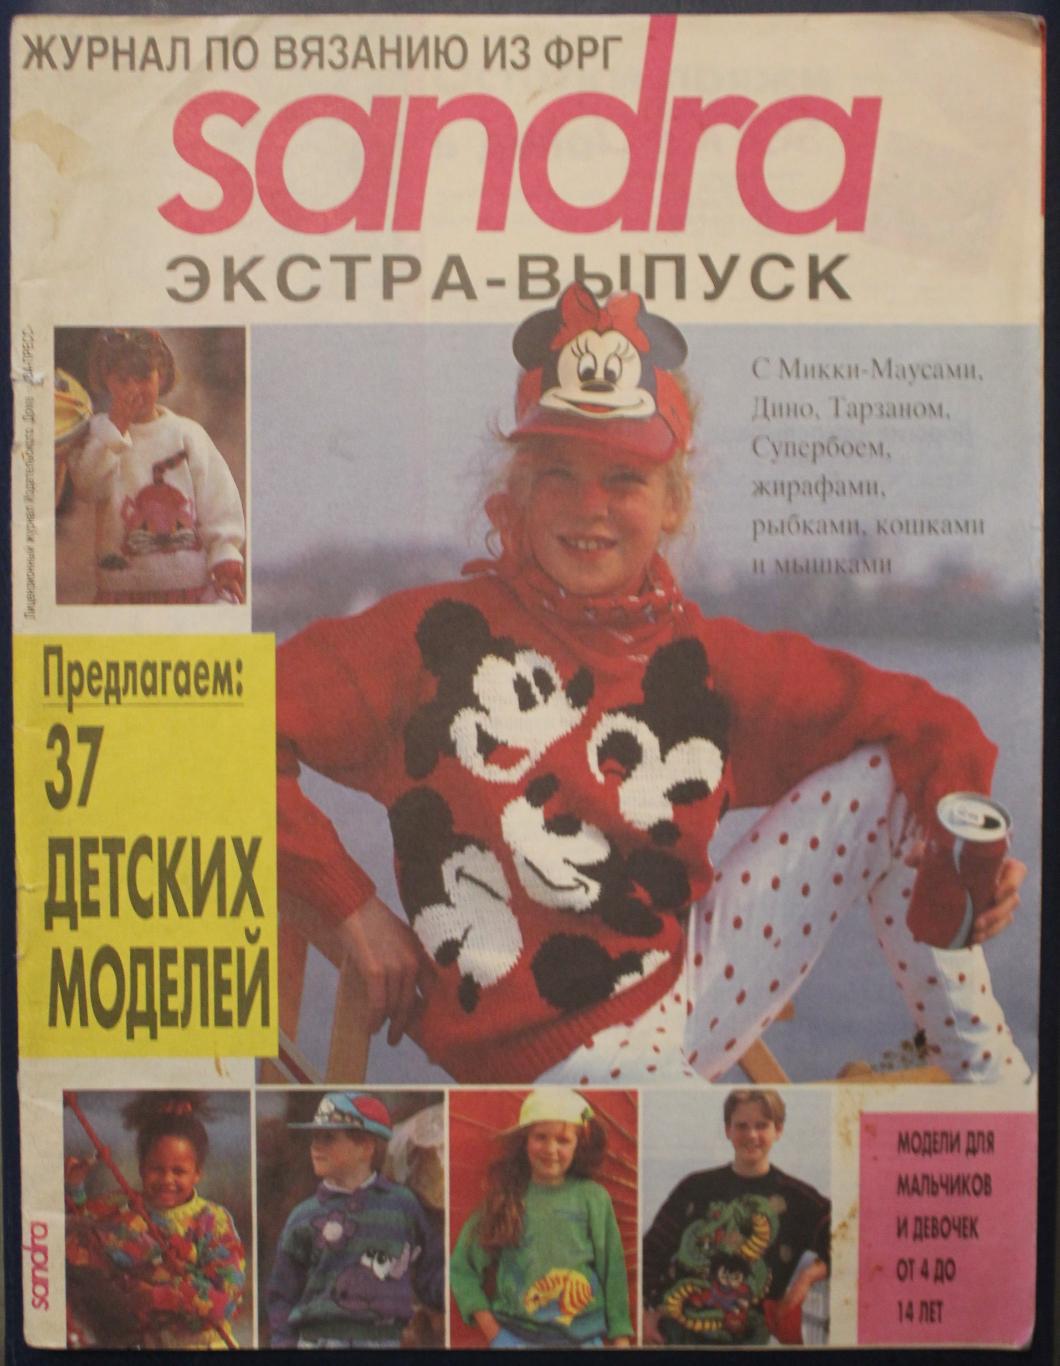 Журнал Sandra №9, сентябрь 1995